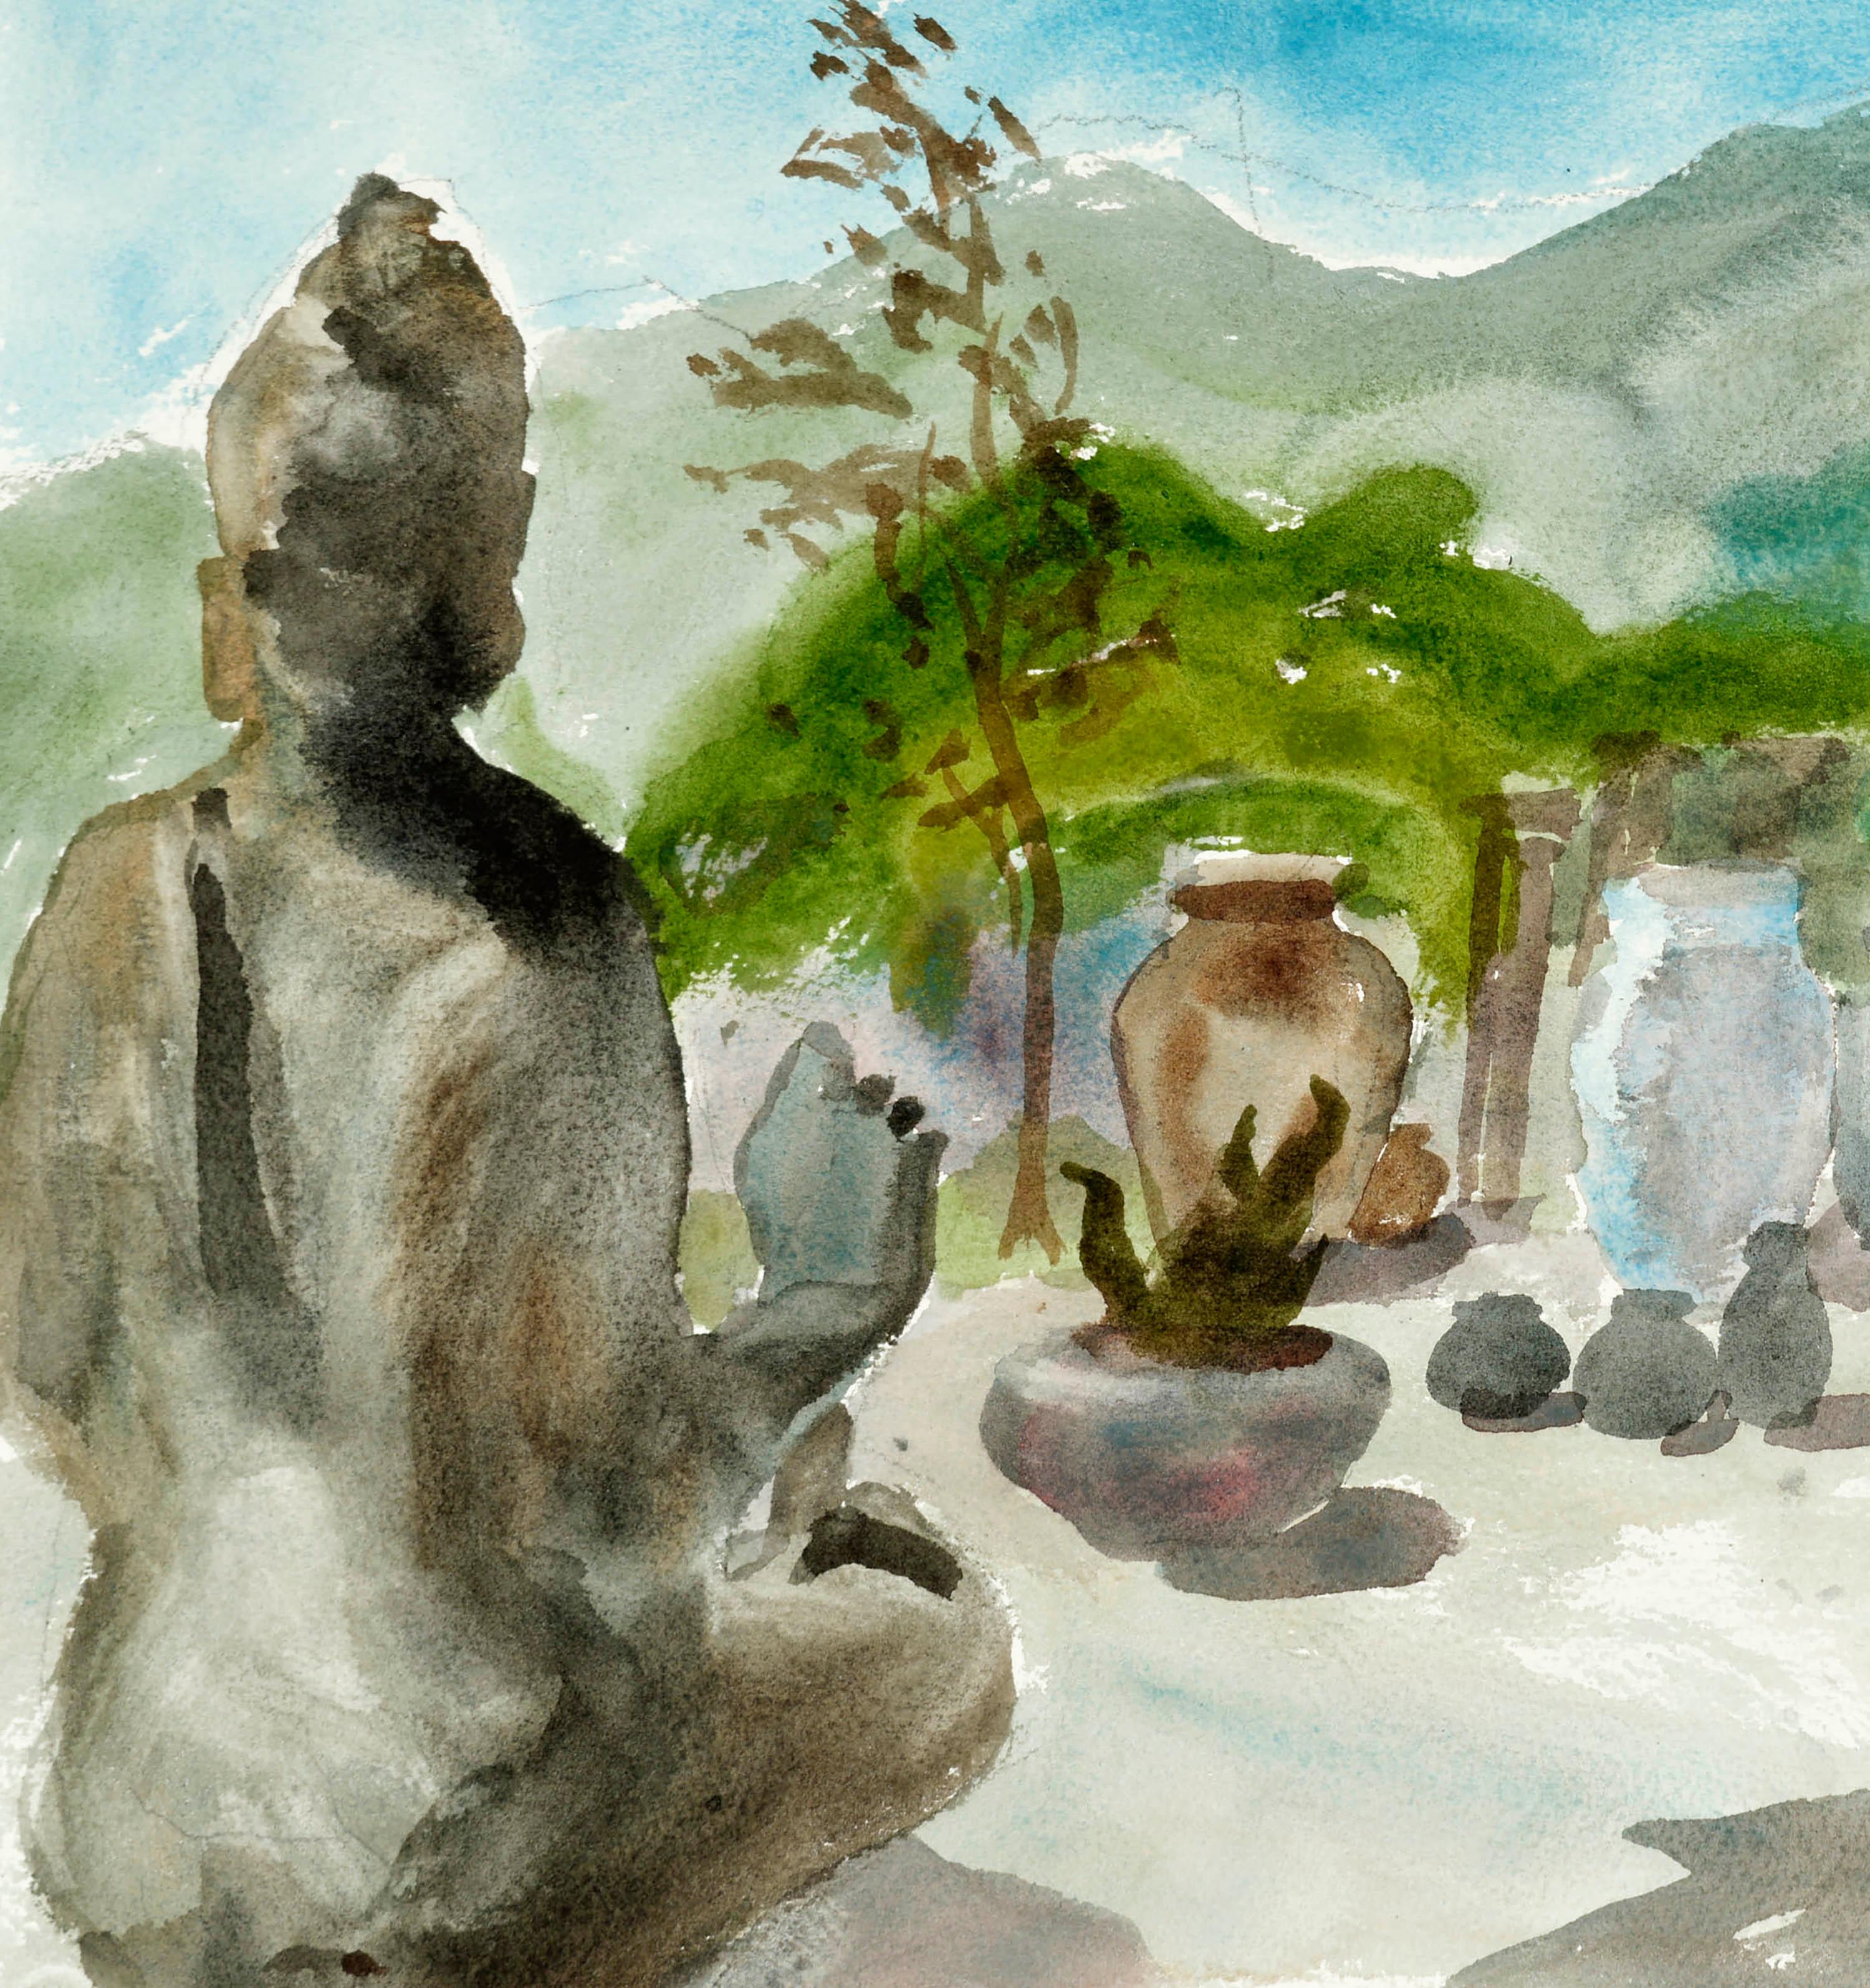 Zen Garden, Figurative Landscape with Buddah Sculpture & Plants - Art by Les Anderson